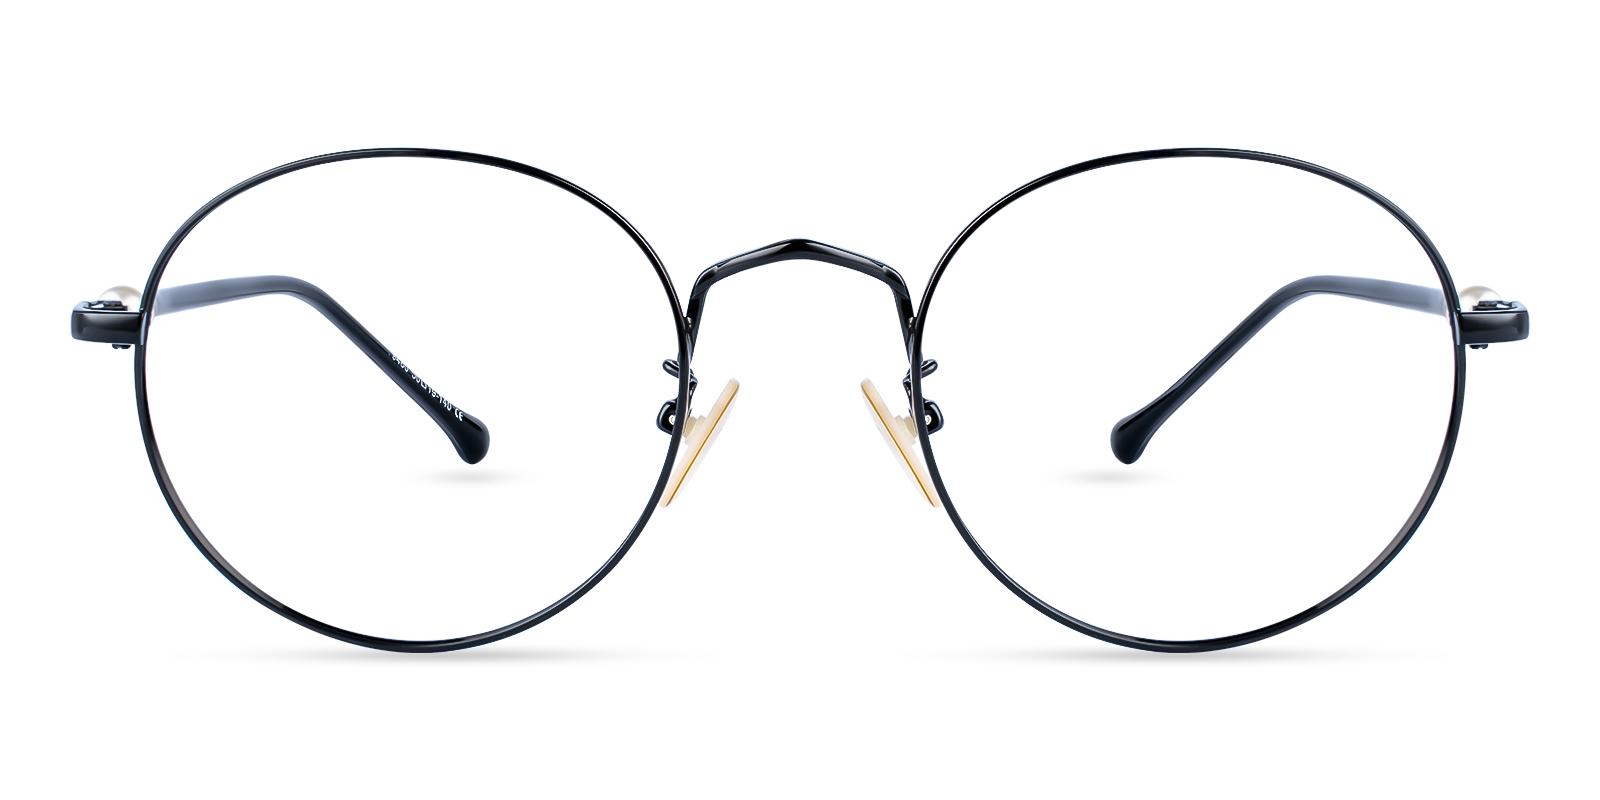 Durns Black Metal Eyeglasses , NosePads Frames from ABBE Glasses